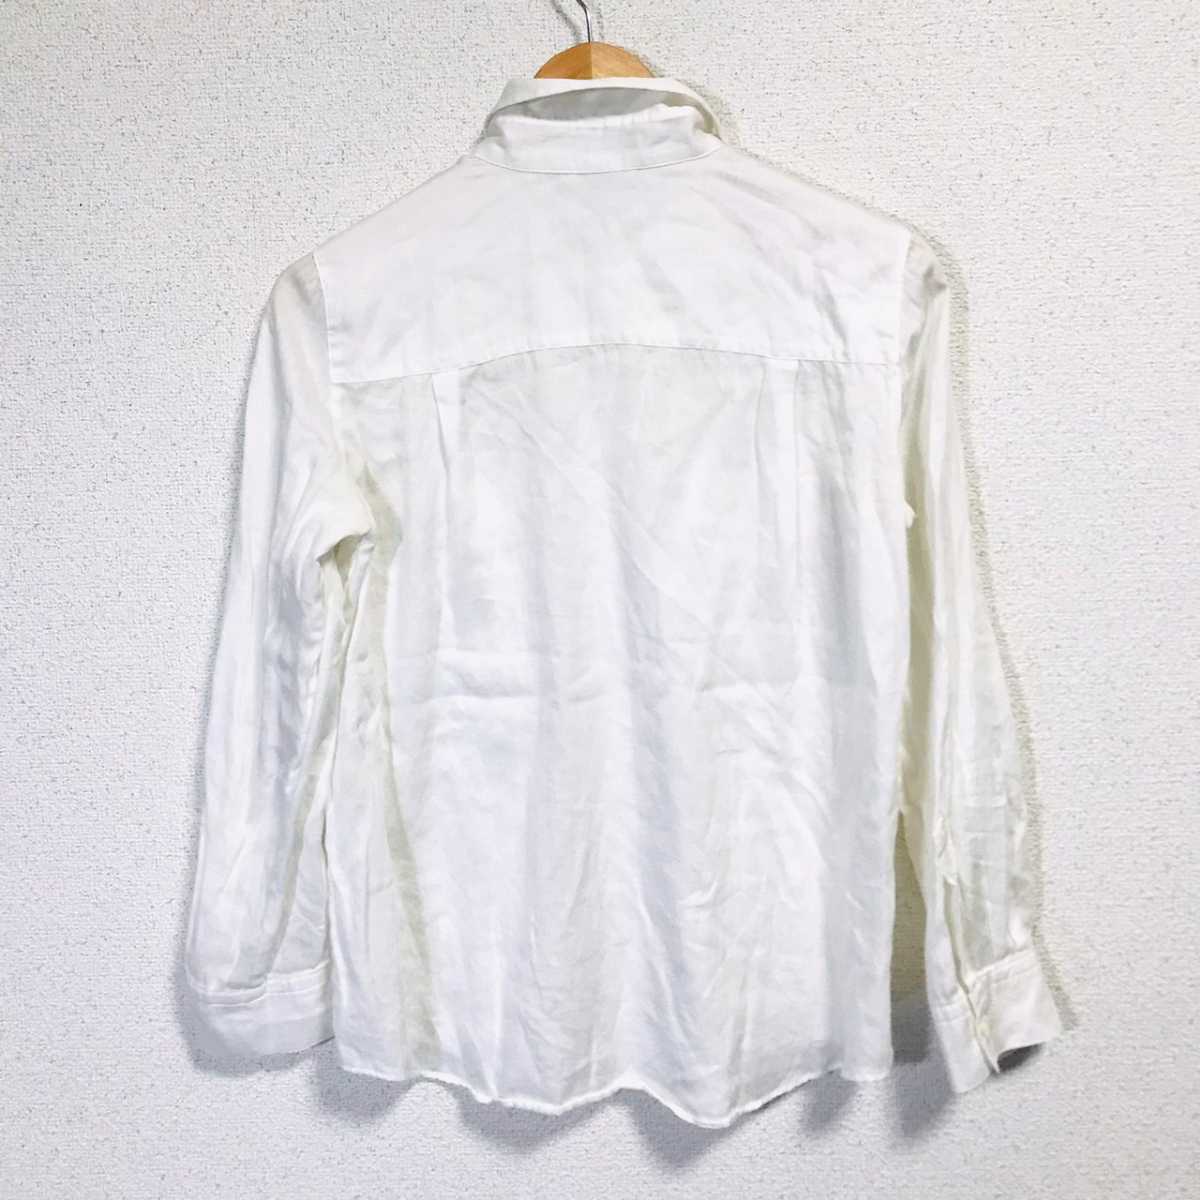 H1459dL《iCB アイシービー》サイズ9 (M位) 長袖シャツ ブラウス ホワイト 白 レディース 綿100% オンワード樫山 コットンシャツ シンプル_画像2